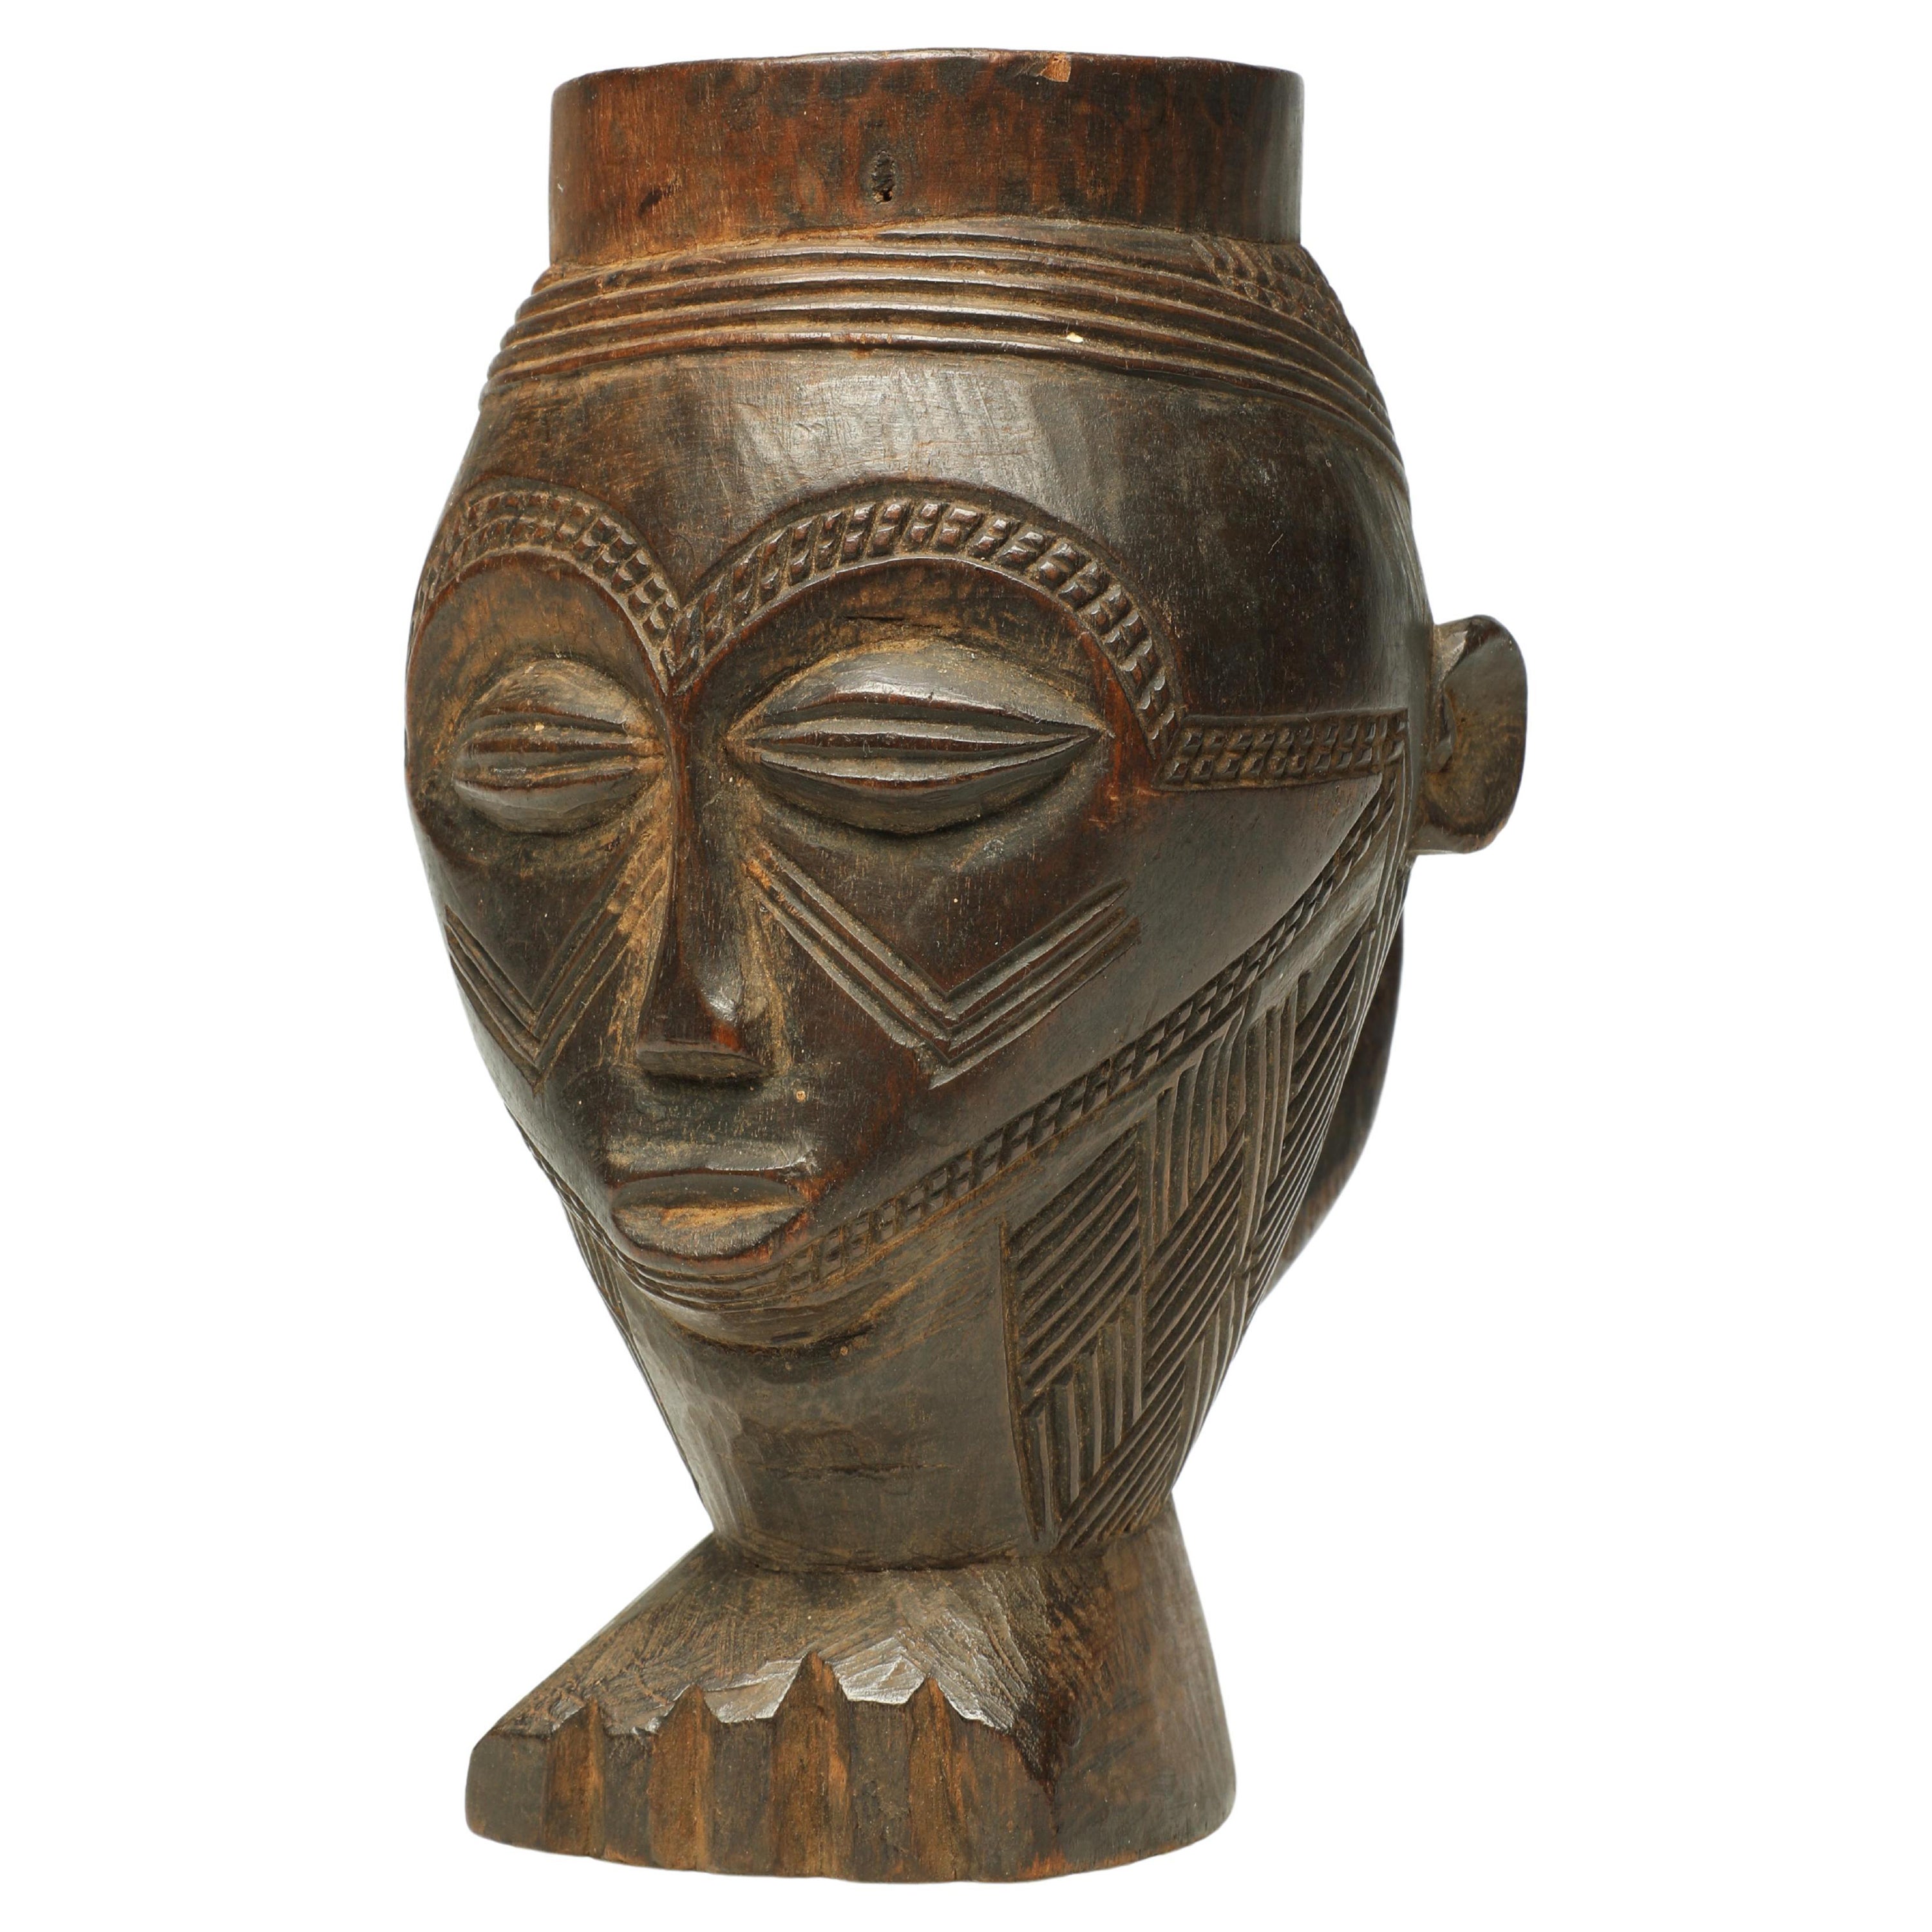 Coupe figurative Kuba en bois sculpté précoce, Congo, base en forme de pied